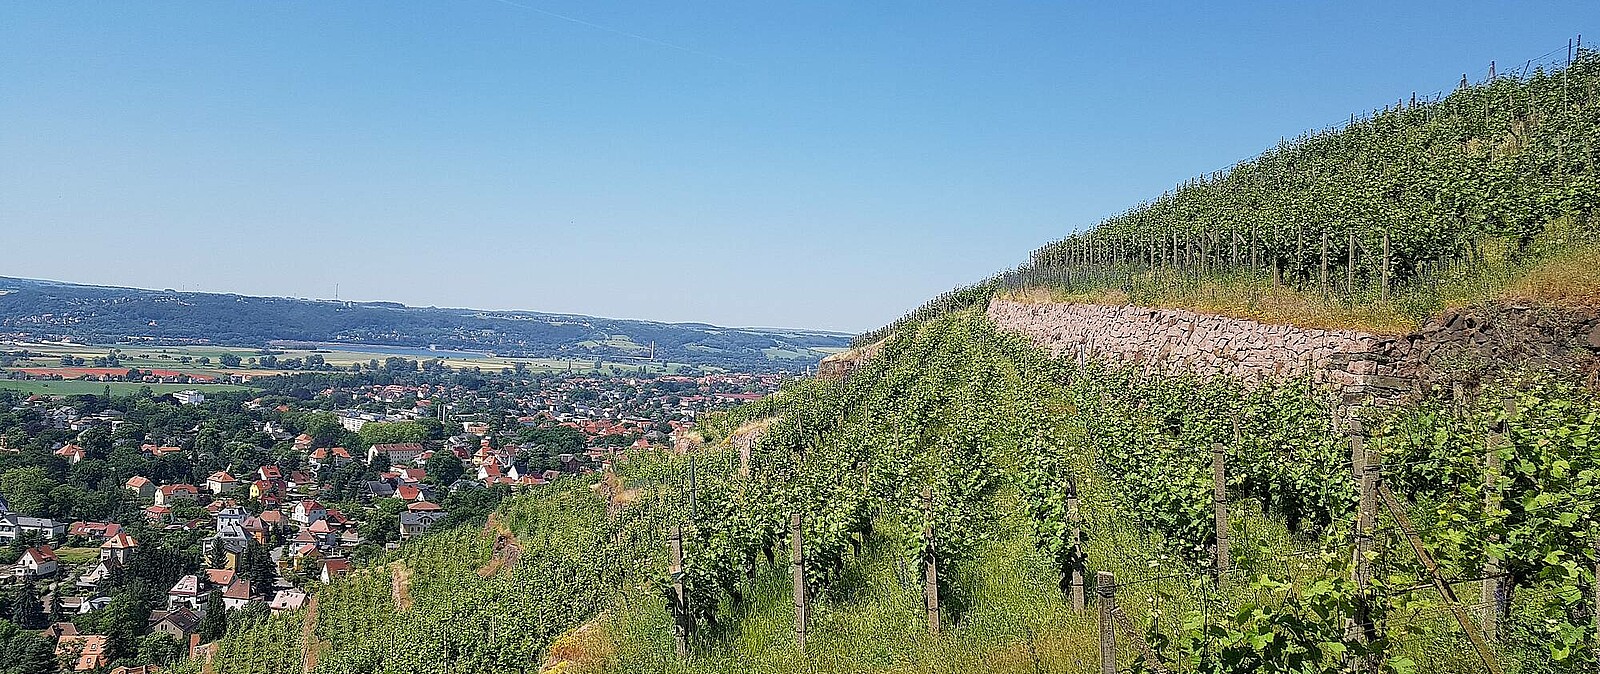 Genießen Sie mit uns eine genussvolle Weinwanderung in den sächsischen Weinbergen. Sächsische Weine sind Spitzenweine - verkosten Sie in vollen Zügen